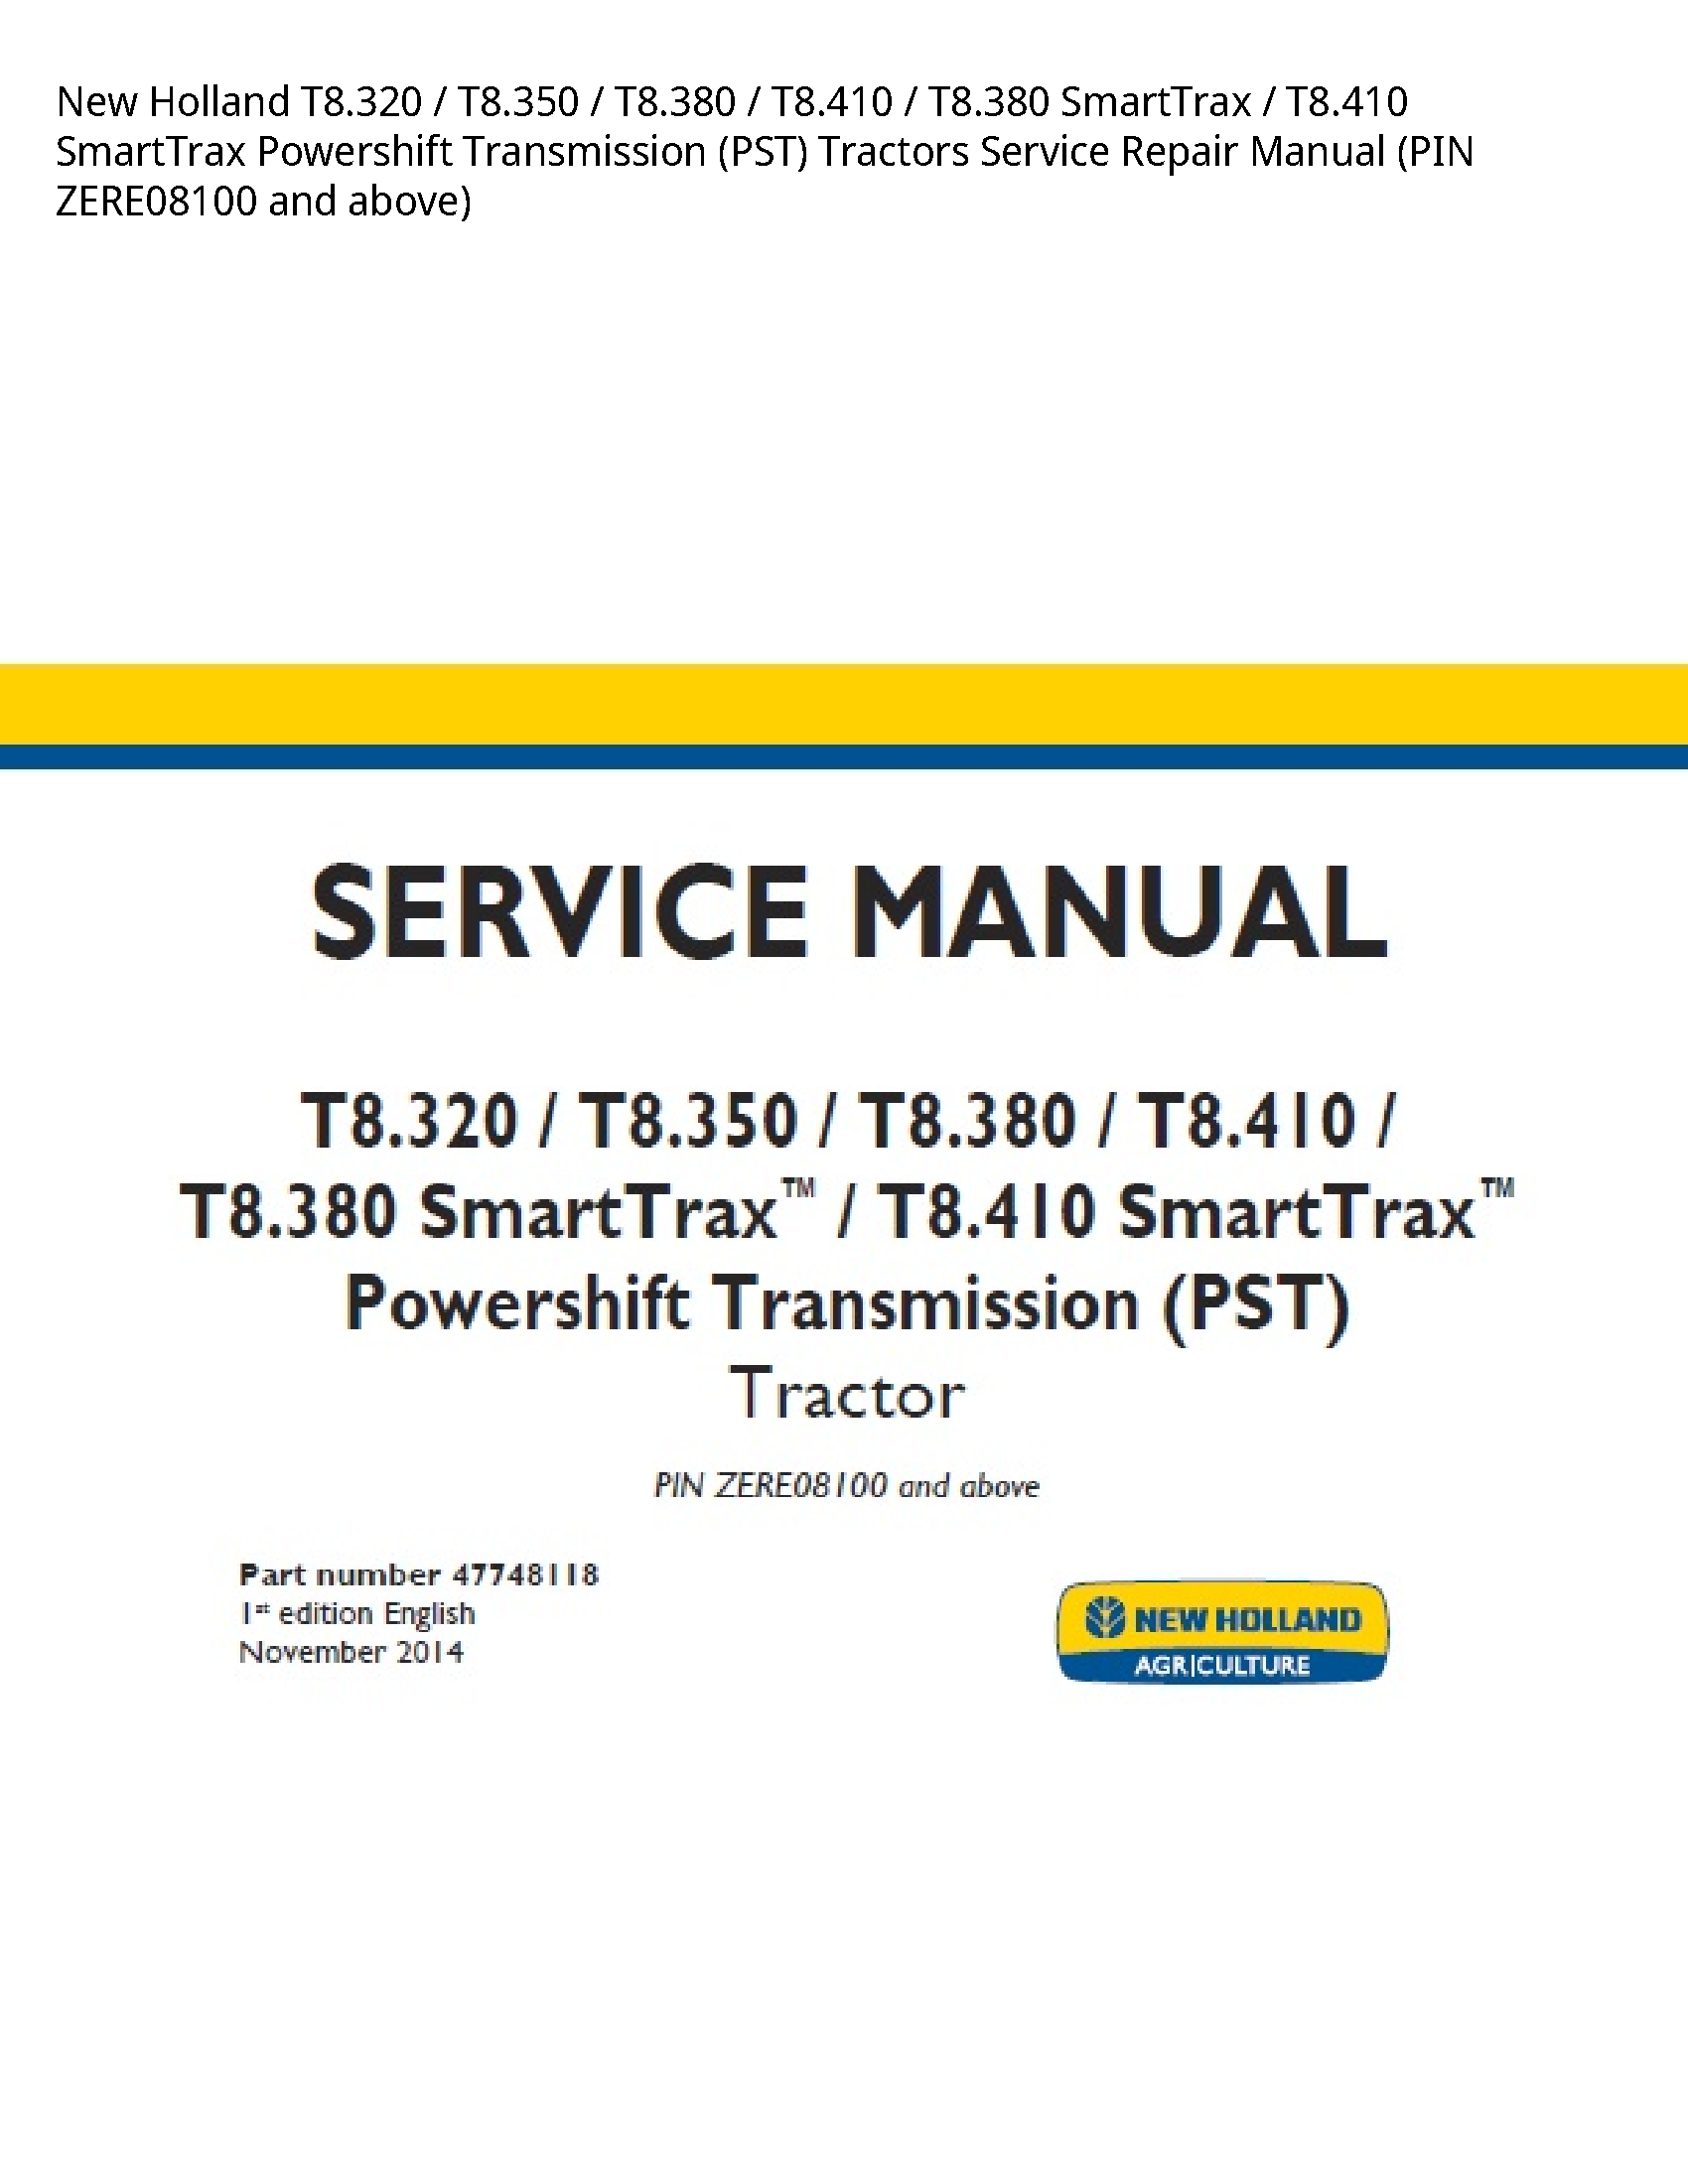 New Holland T8.320 SmartTrax SmartTrax Powershift Transmission (PST) Tractors manual